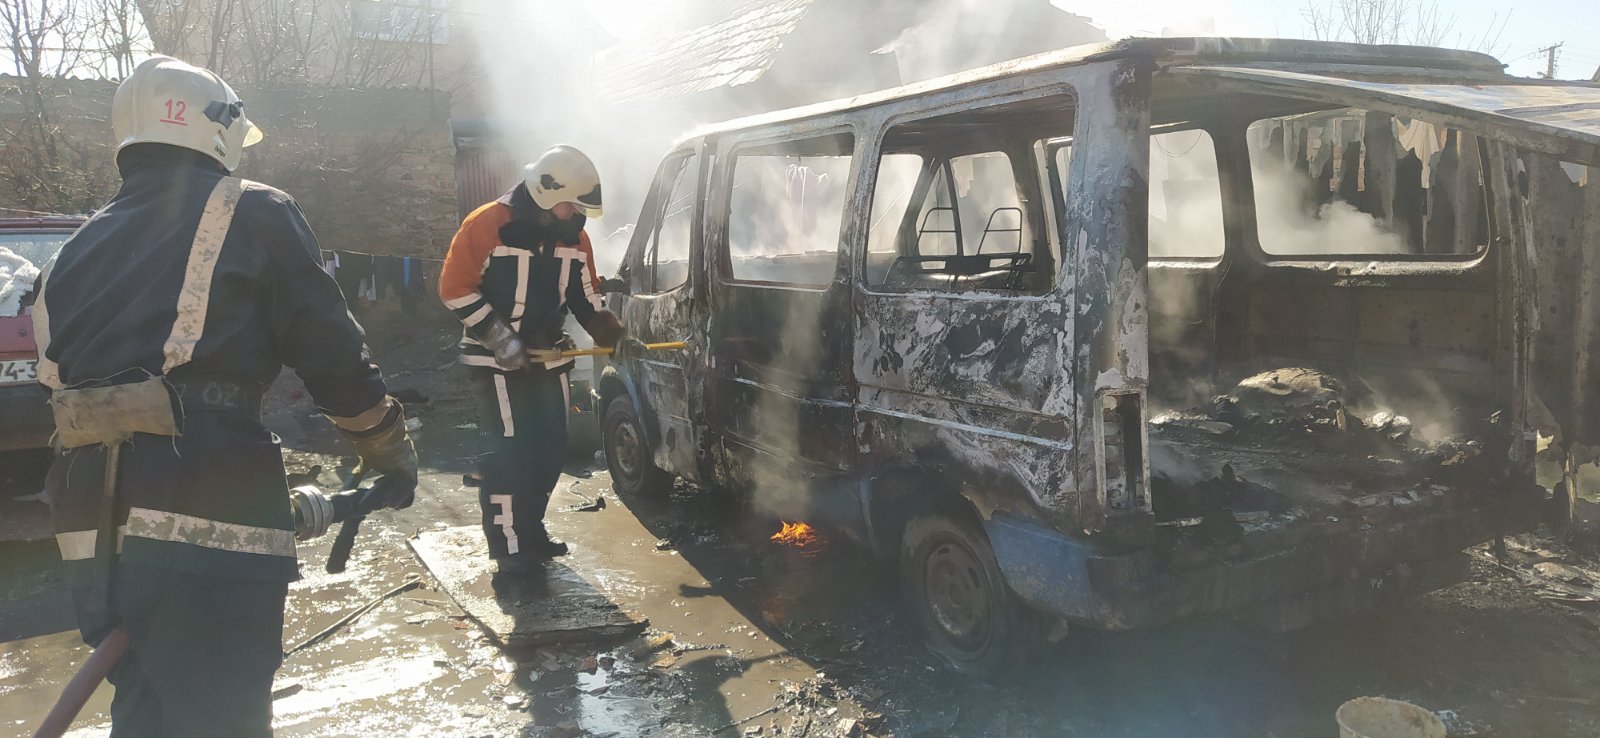 У Берегові, ймовірно через дитячі пустощі, згорів мікроавтобус (ФОТО)